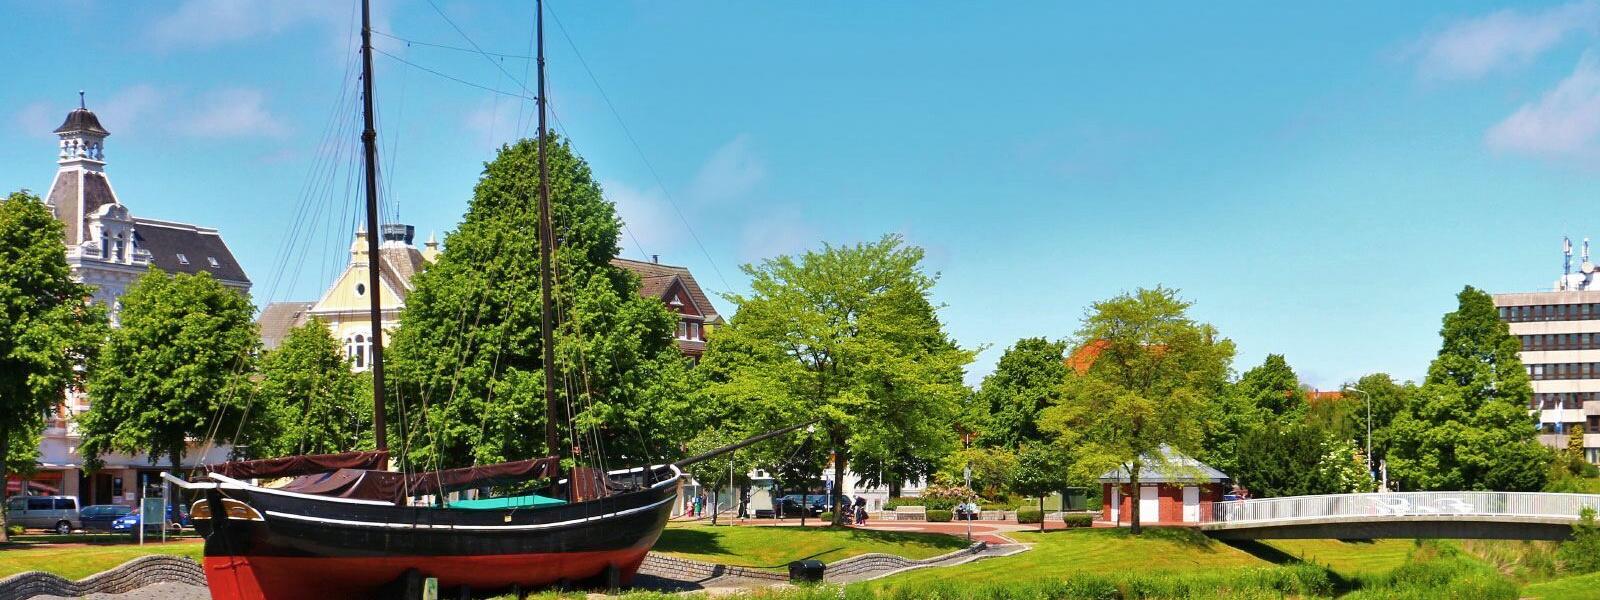 Ferienwohnungen und Ferienhäuser in Cuxhaven - atraveo